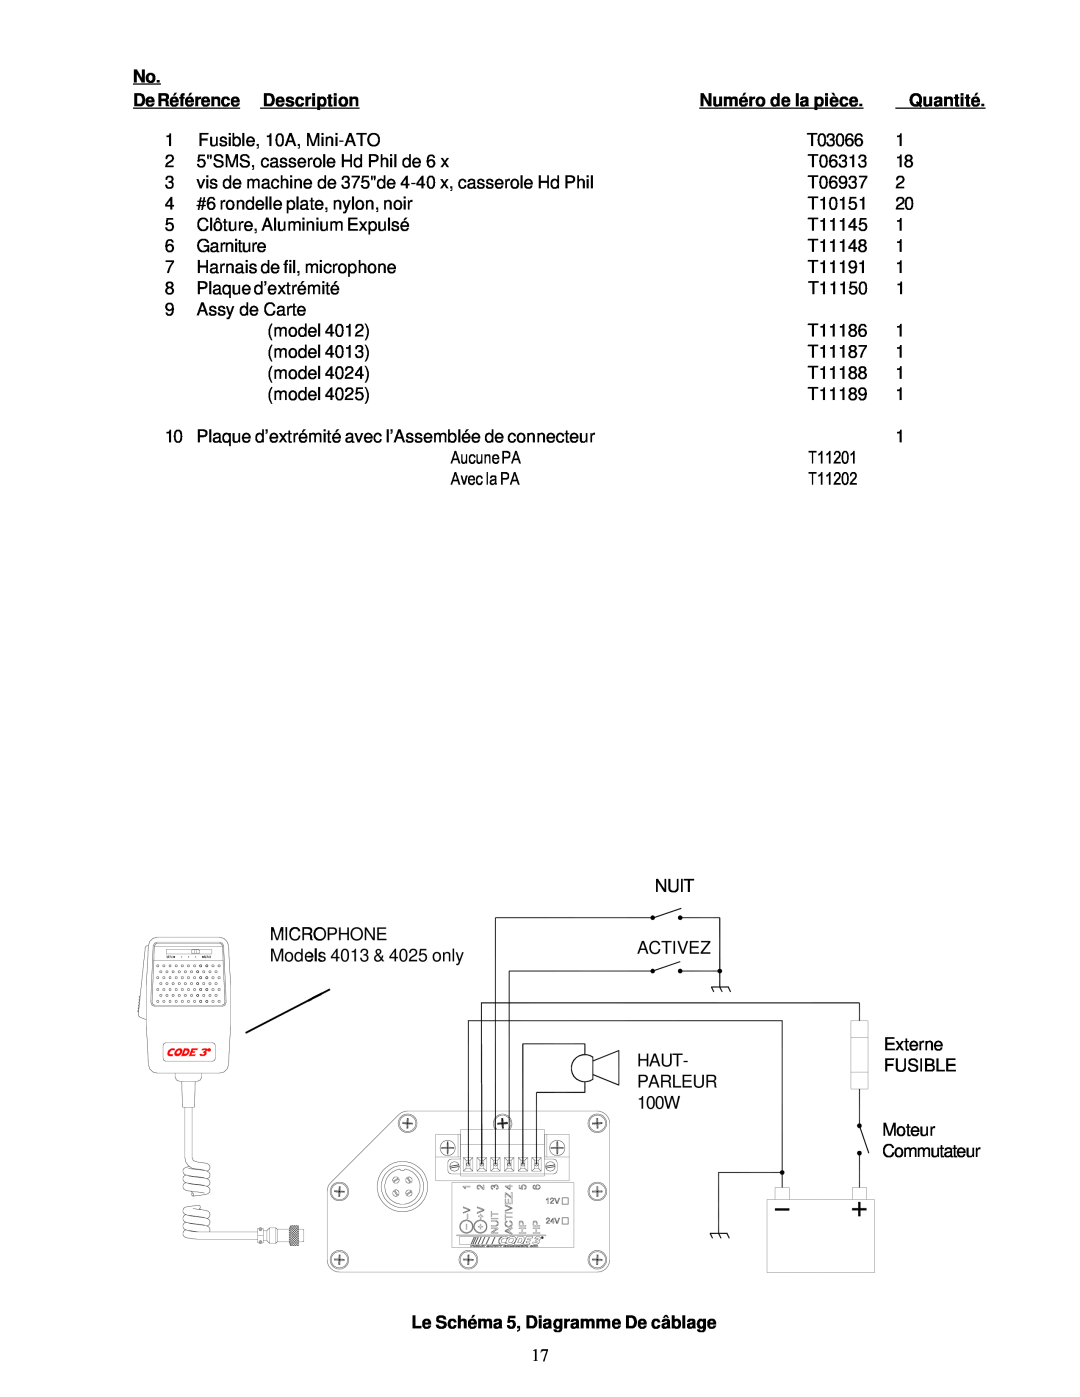 Bosch Appliances 4000 De Référence Description, Numéro de la pièce, Quantité, Le Schéma 5, Diagramme De câblage 